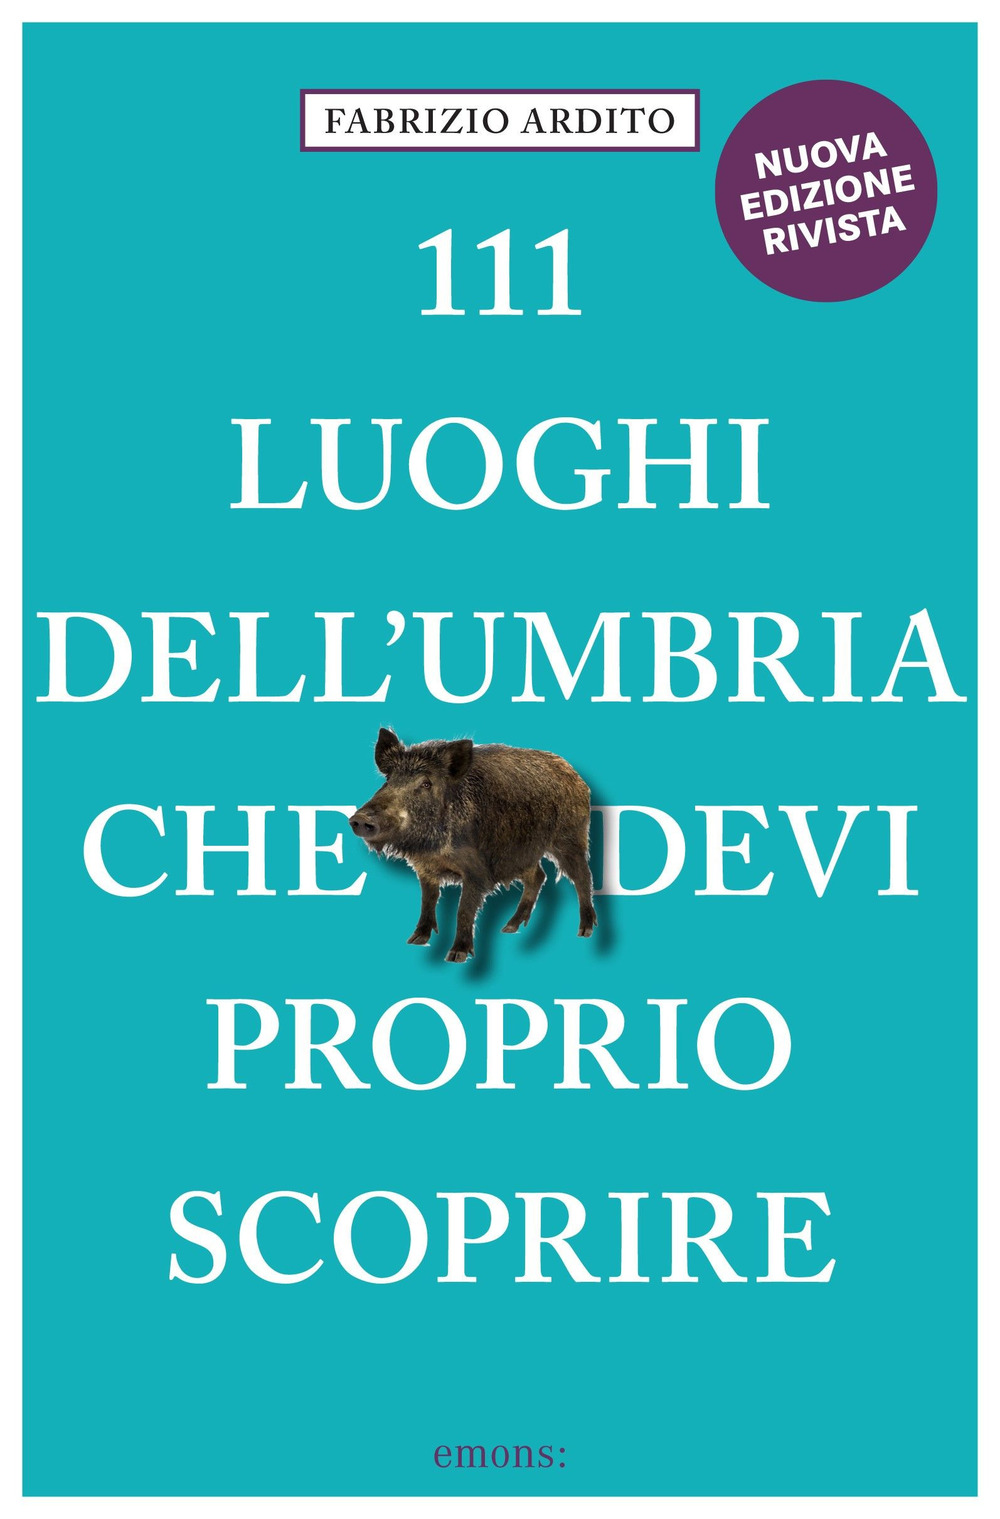 111 LUOGHI DELL'UMBRIA (nuova edizione) CHE DEVI PROPRIO SCOPRIRE - 9783740813123